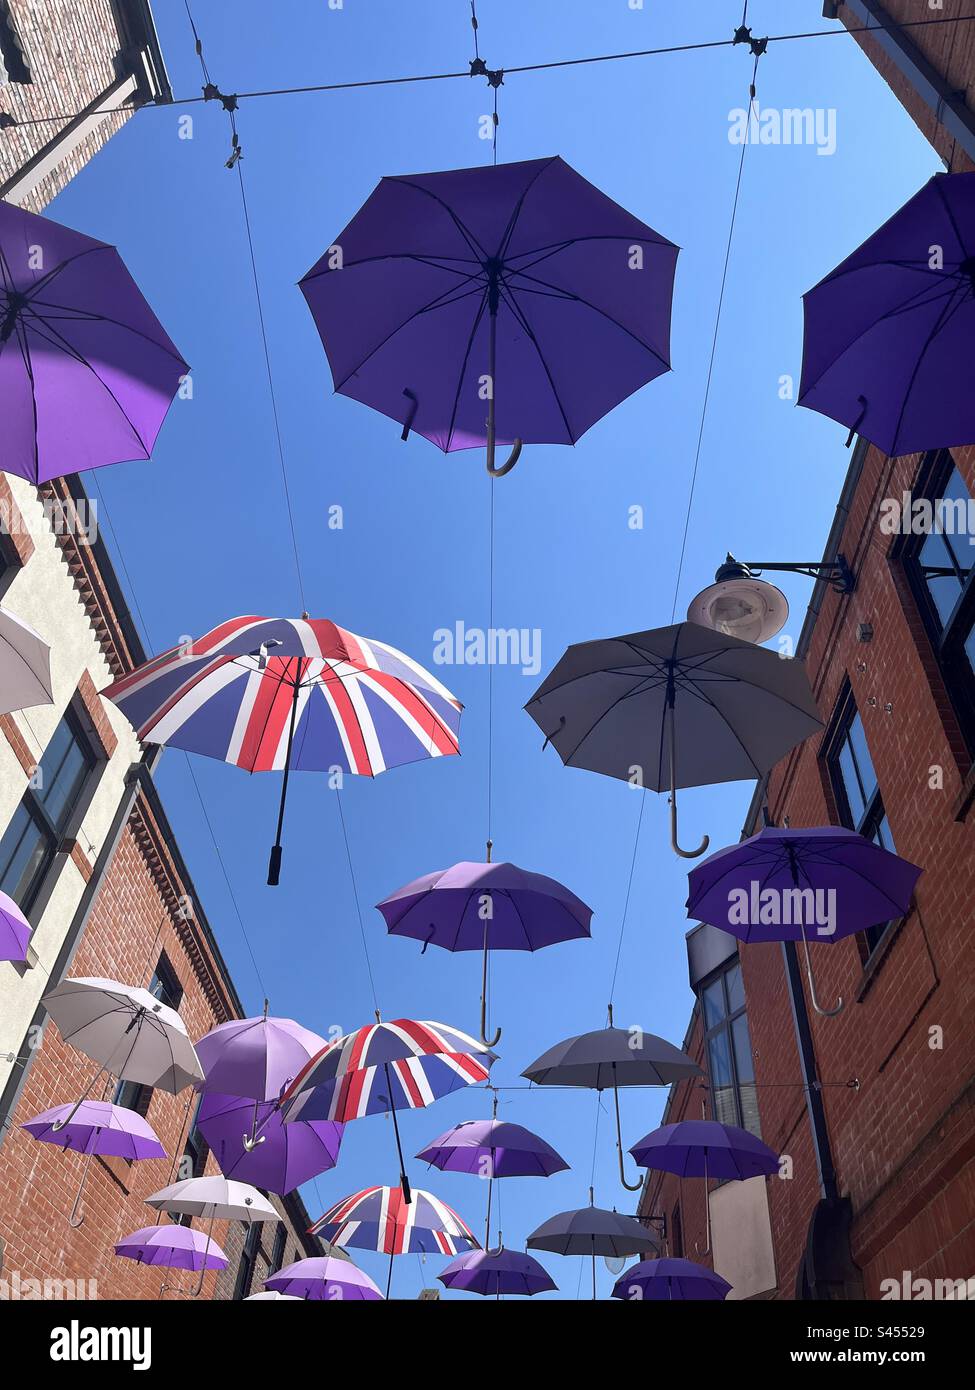 Parapluie aérien, photographié contre un ciel bleu d'été, avec des  parapluies à motif Union Jack, entre deux rangées de bâtiments Photo Stock  - Alamy